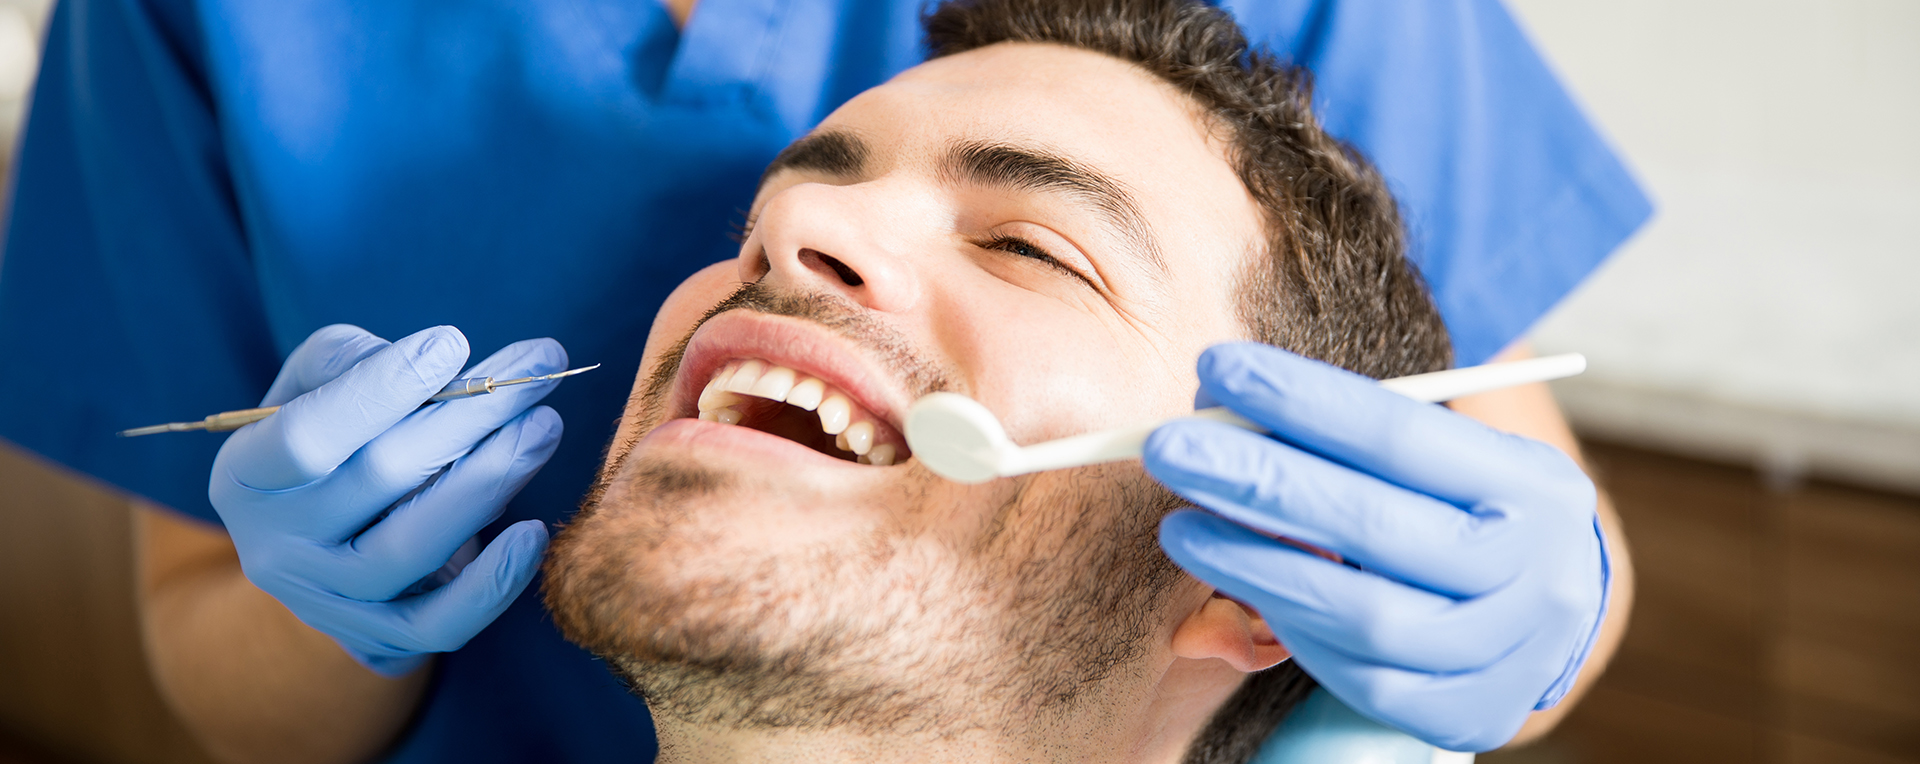 Allgemeine Zahnheilkunde im Zahnärzte-Zentrum Hiltrup